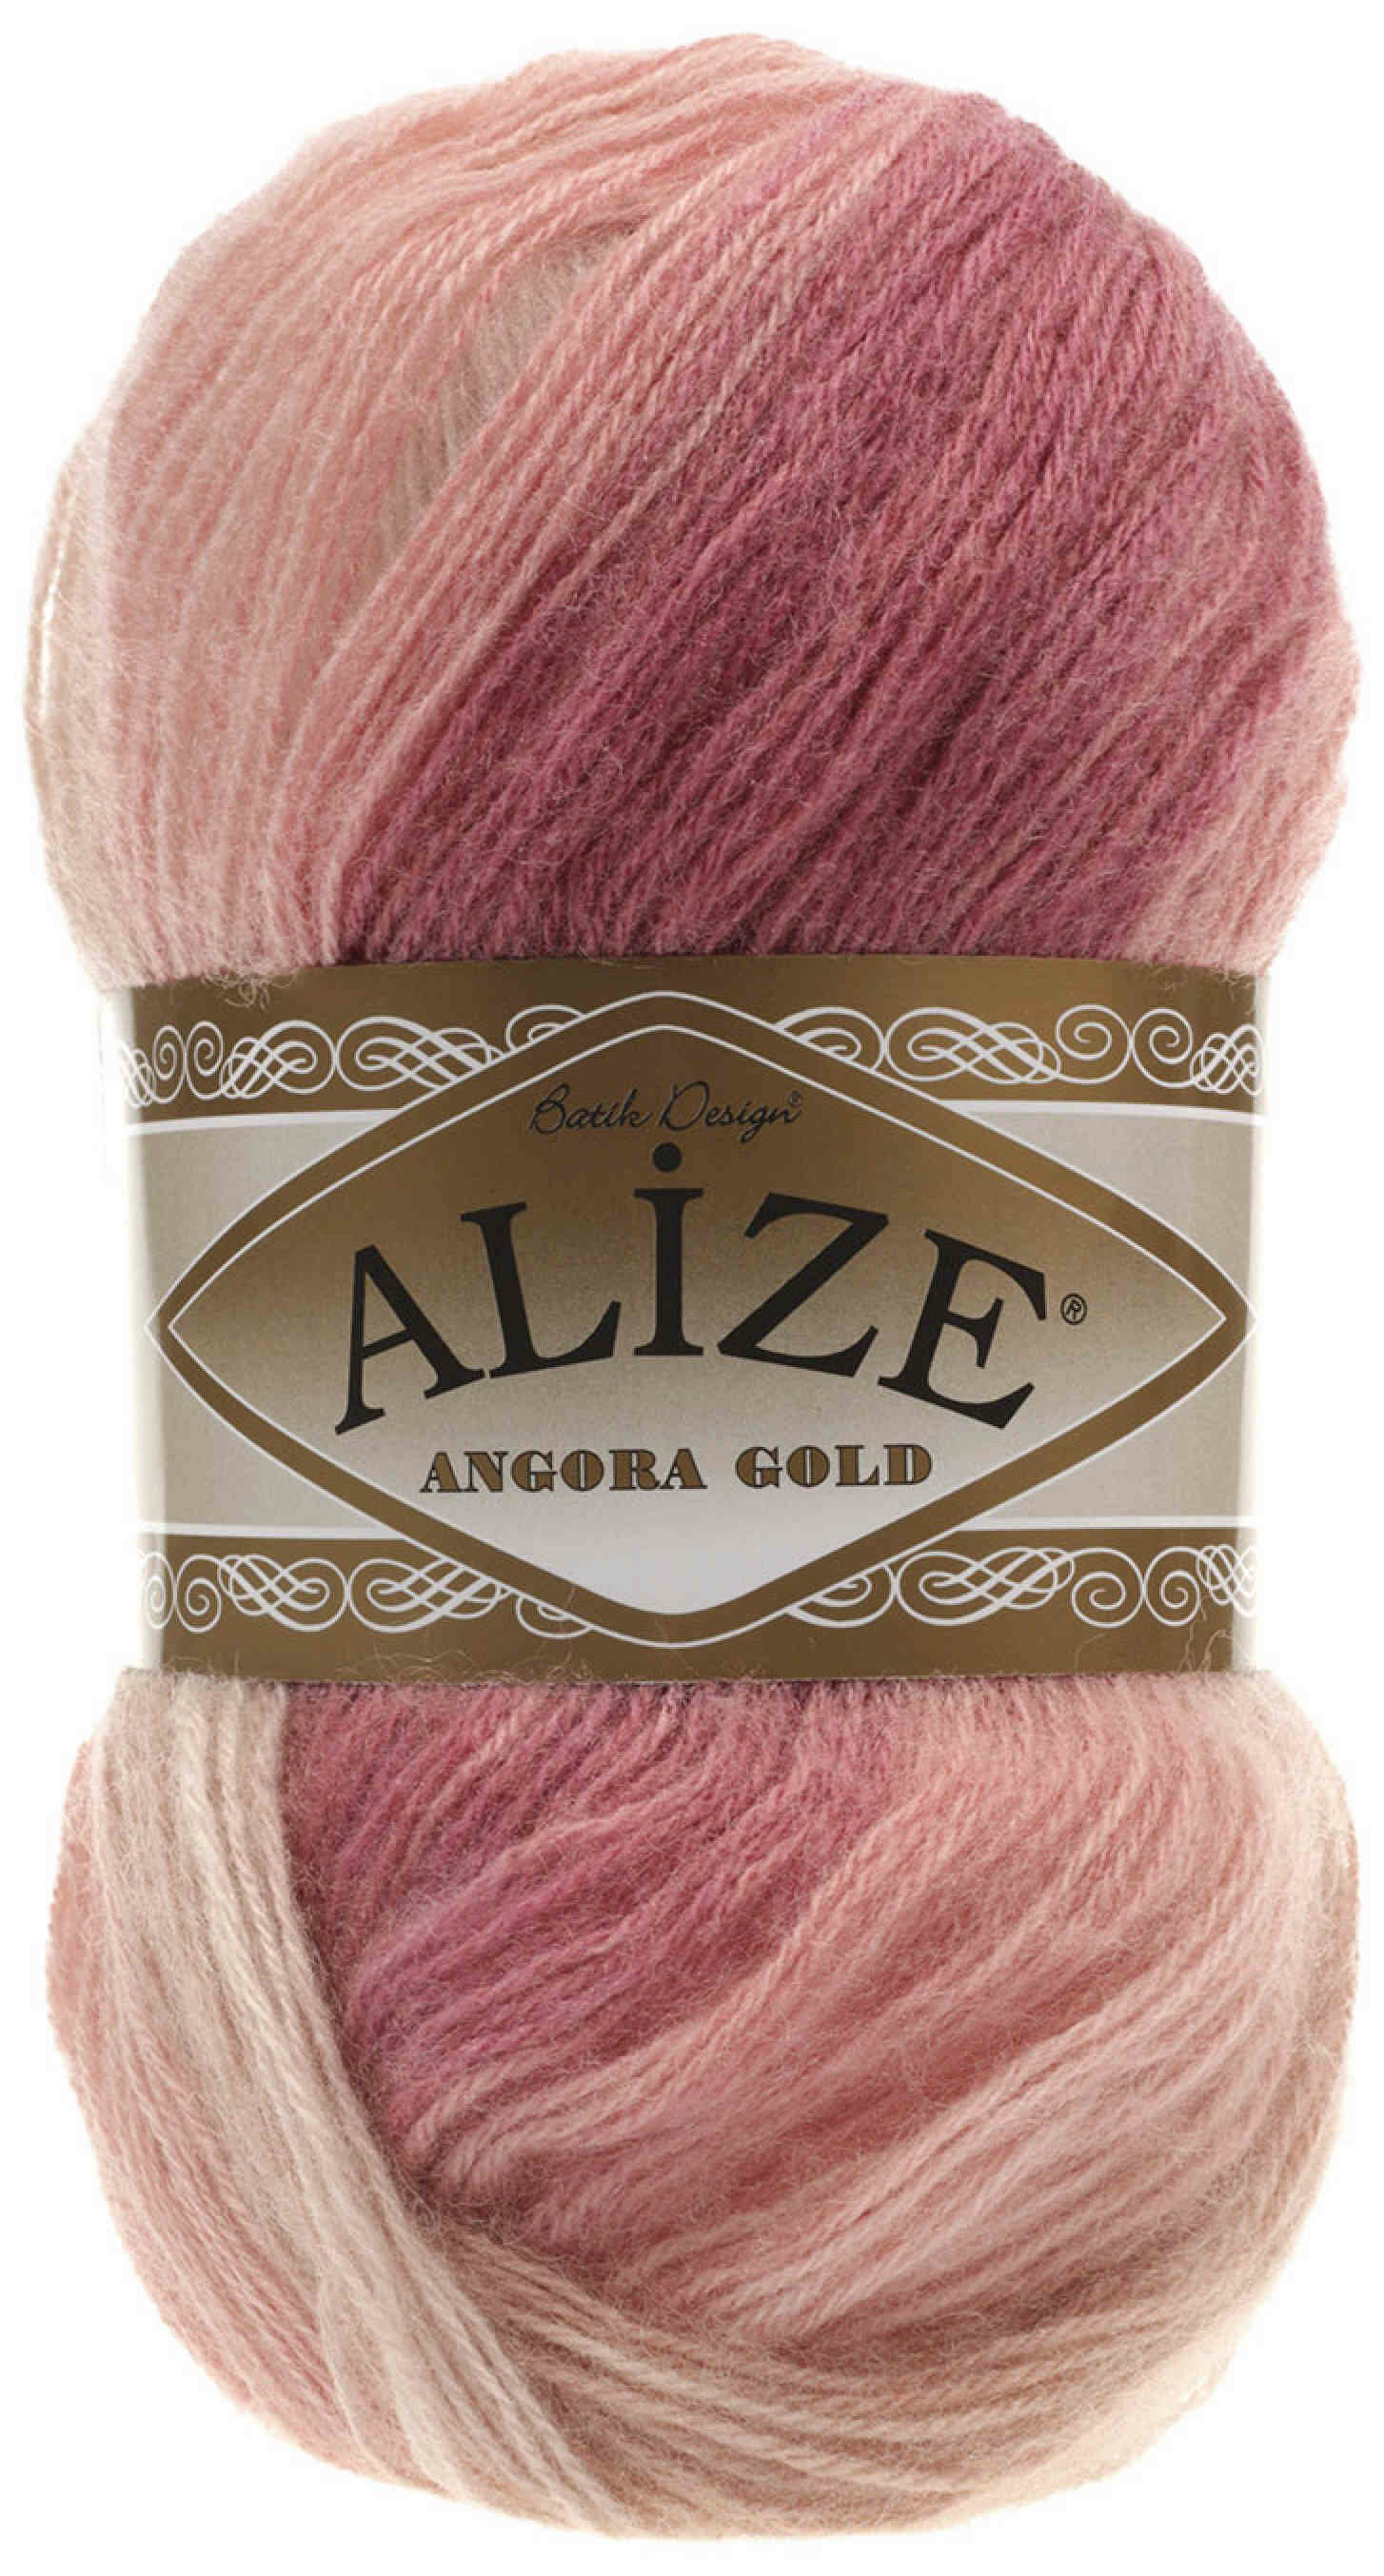 Пряжа Alize Angora Gold Batik розовый-брусника-кремовый (5652), 80%акрил/20%шерсть, 550м, 100г, 1шт